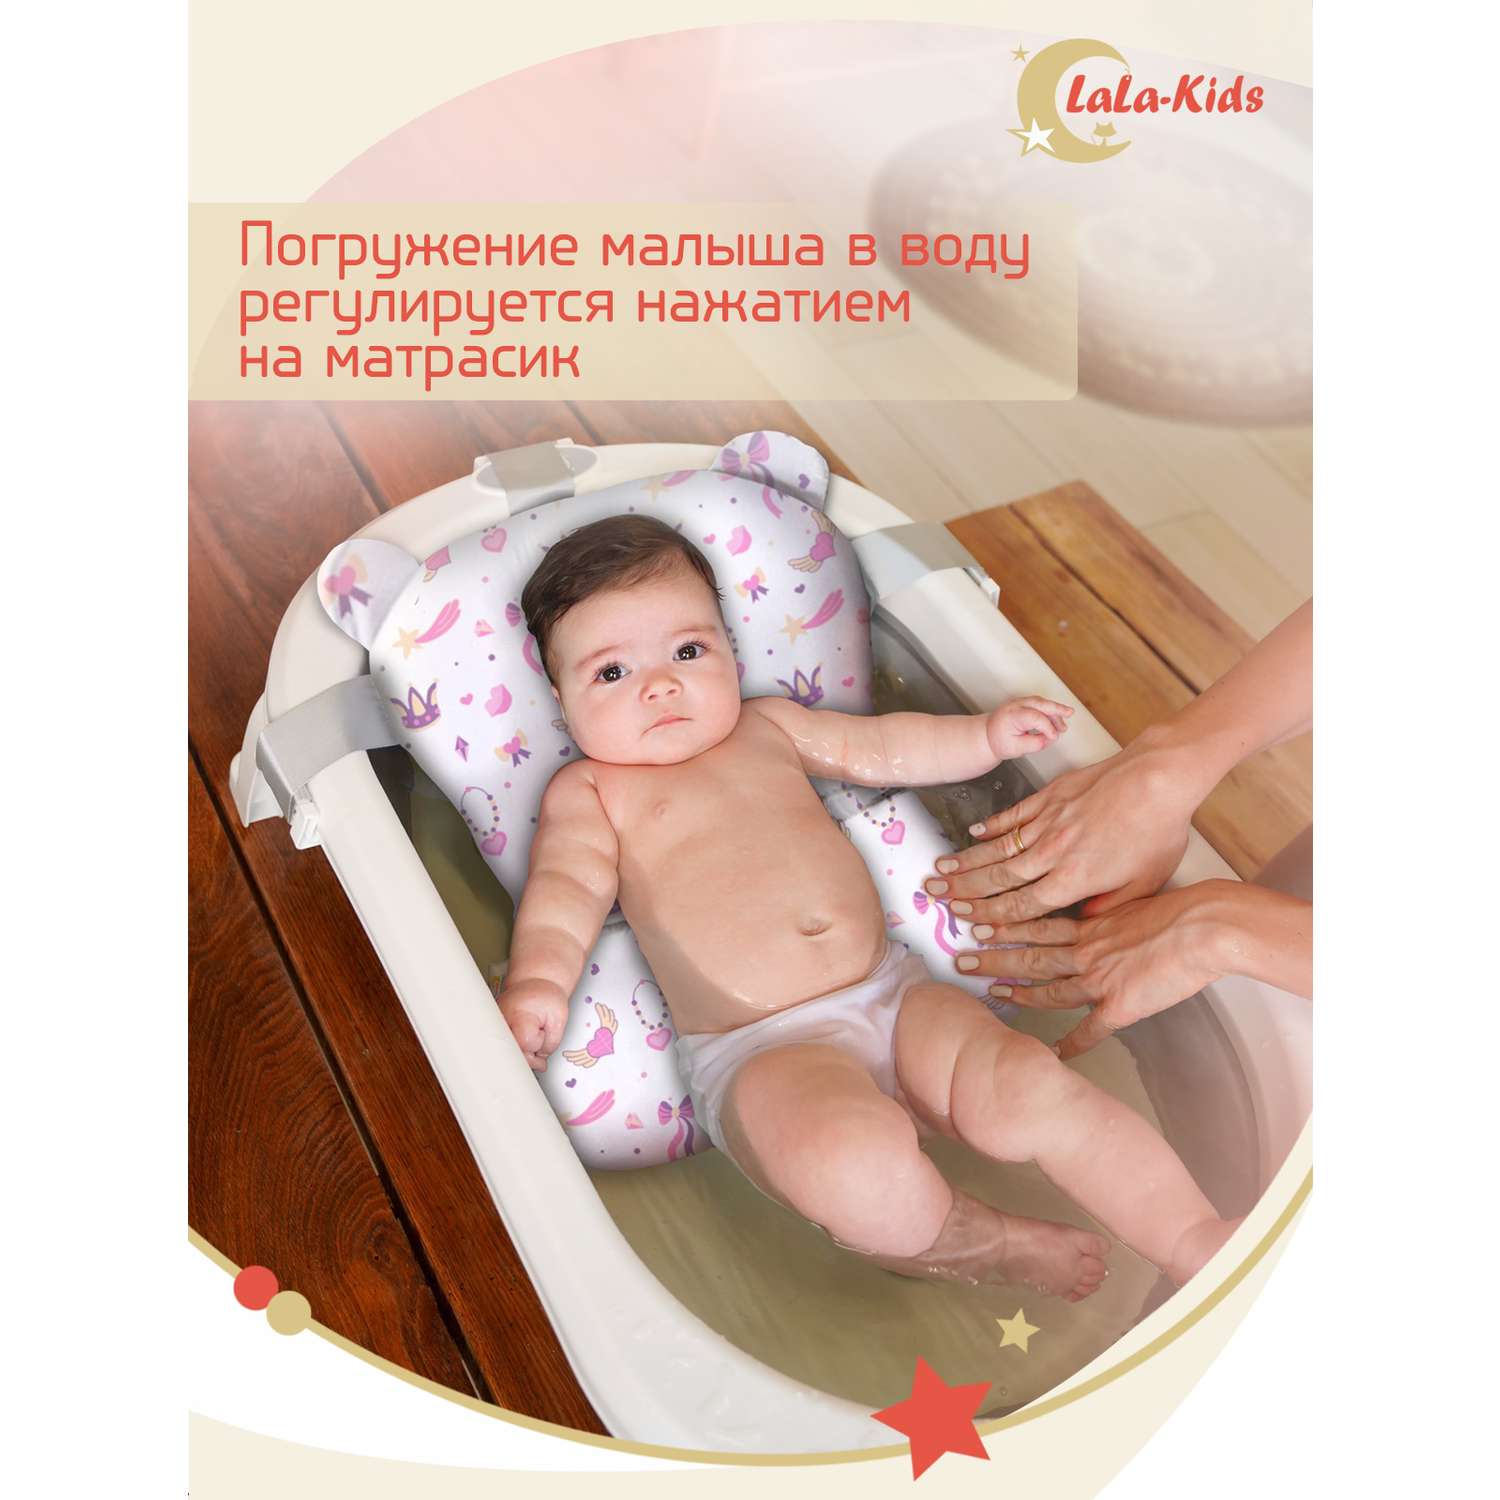 Ванночка для новорожденных LaLa-Kids складная с матрасиком и термометром в комплекте - фото 18